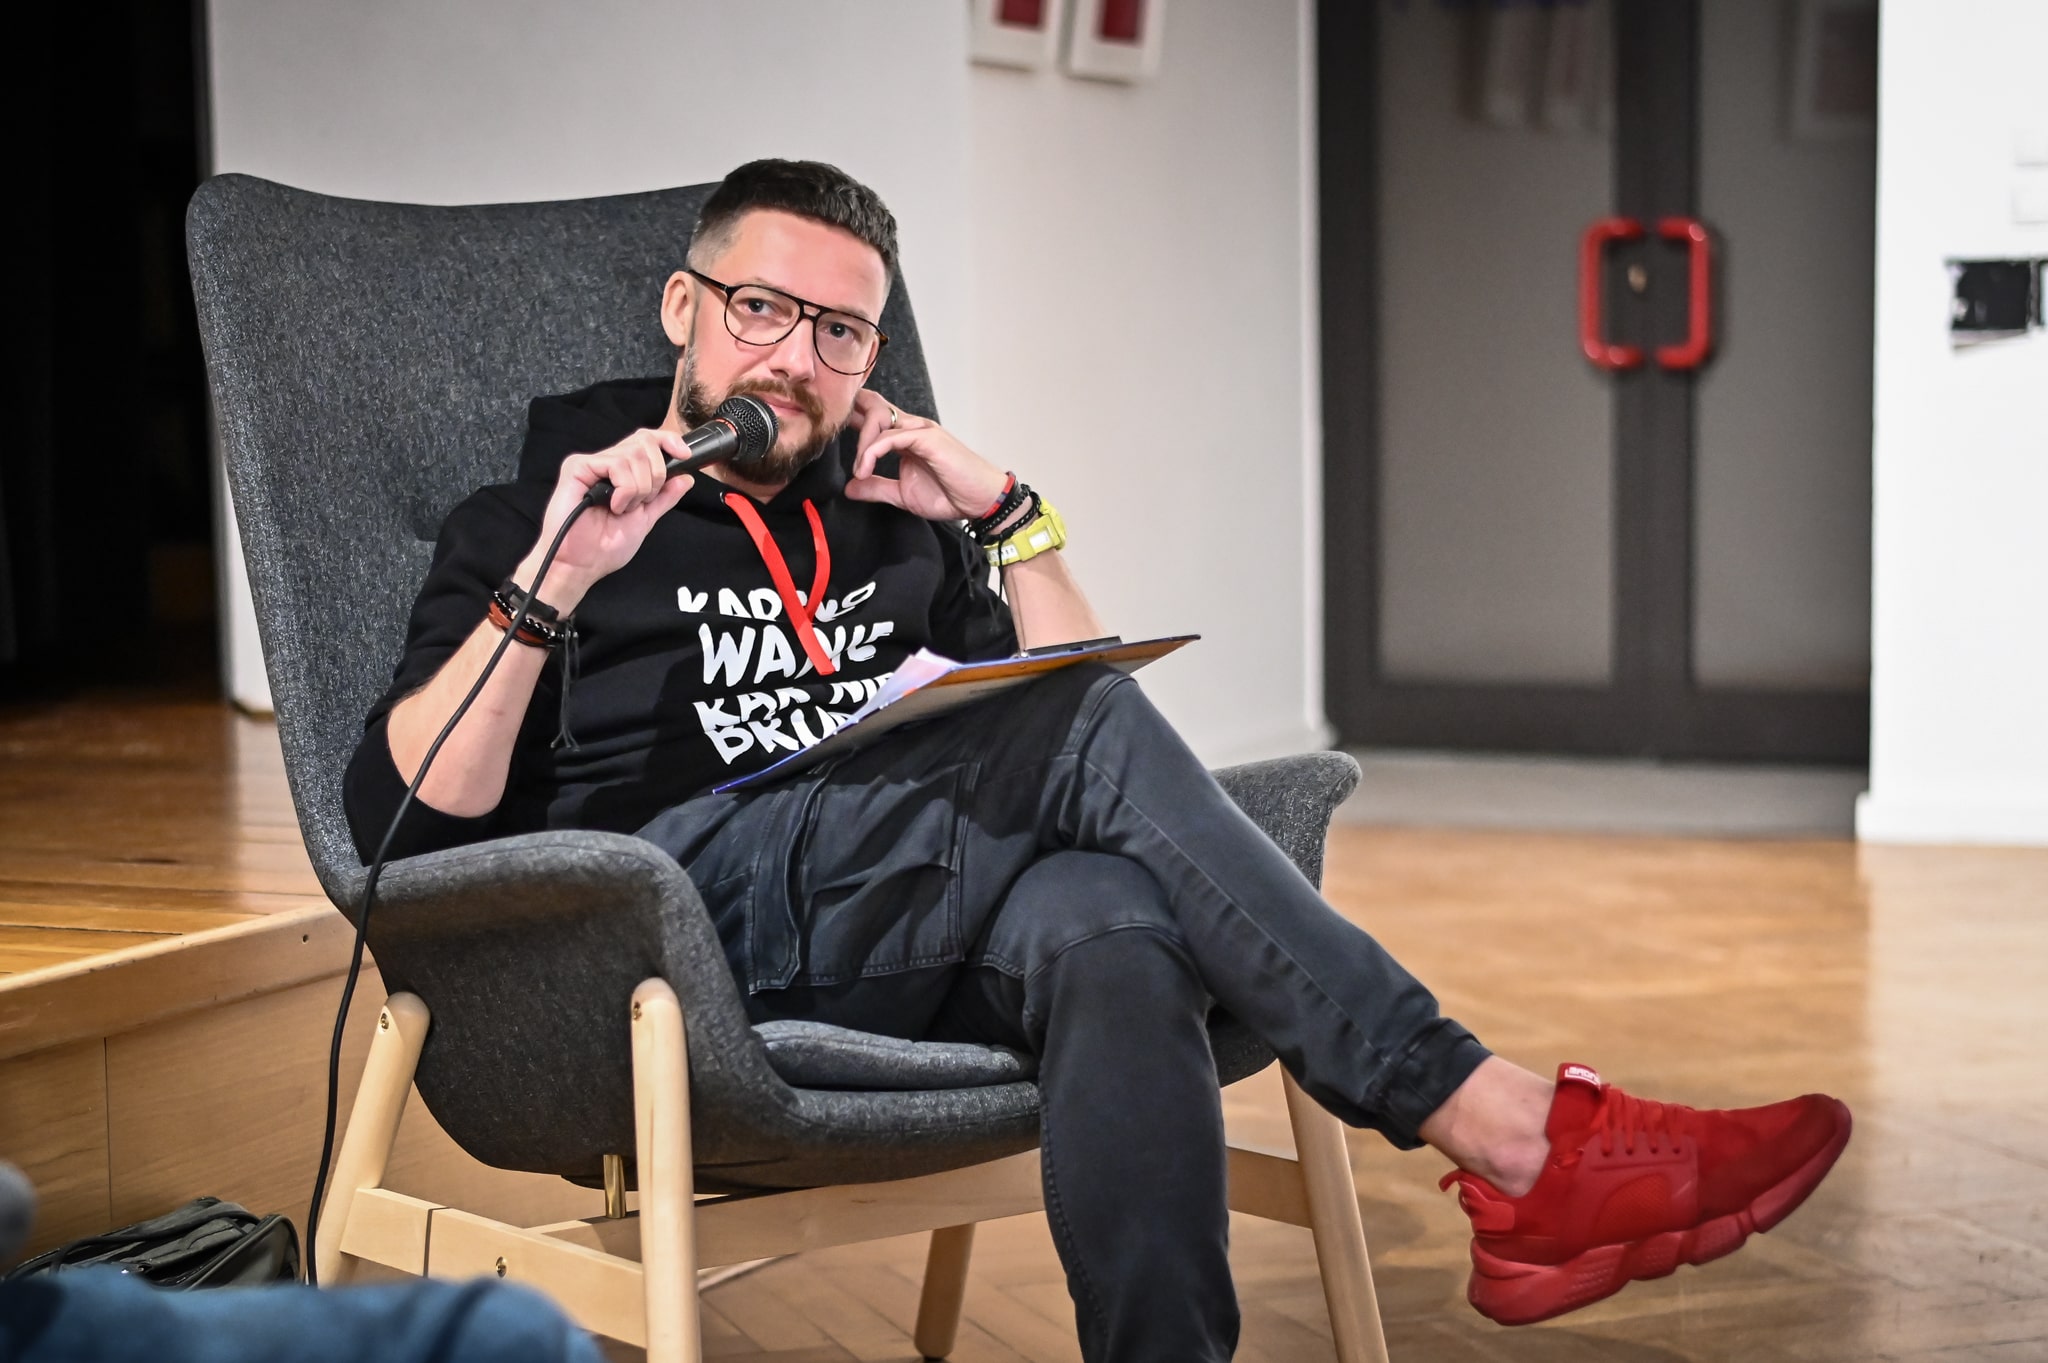 mężczyzna Marcin Zegadło w okularach siedzący w fotelu w bluzie z napisem "kartkowanie rąk nie brudzi" mówiący przez mikrofon